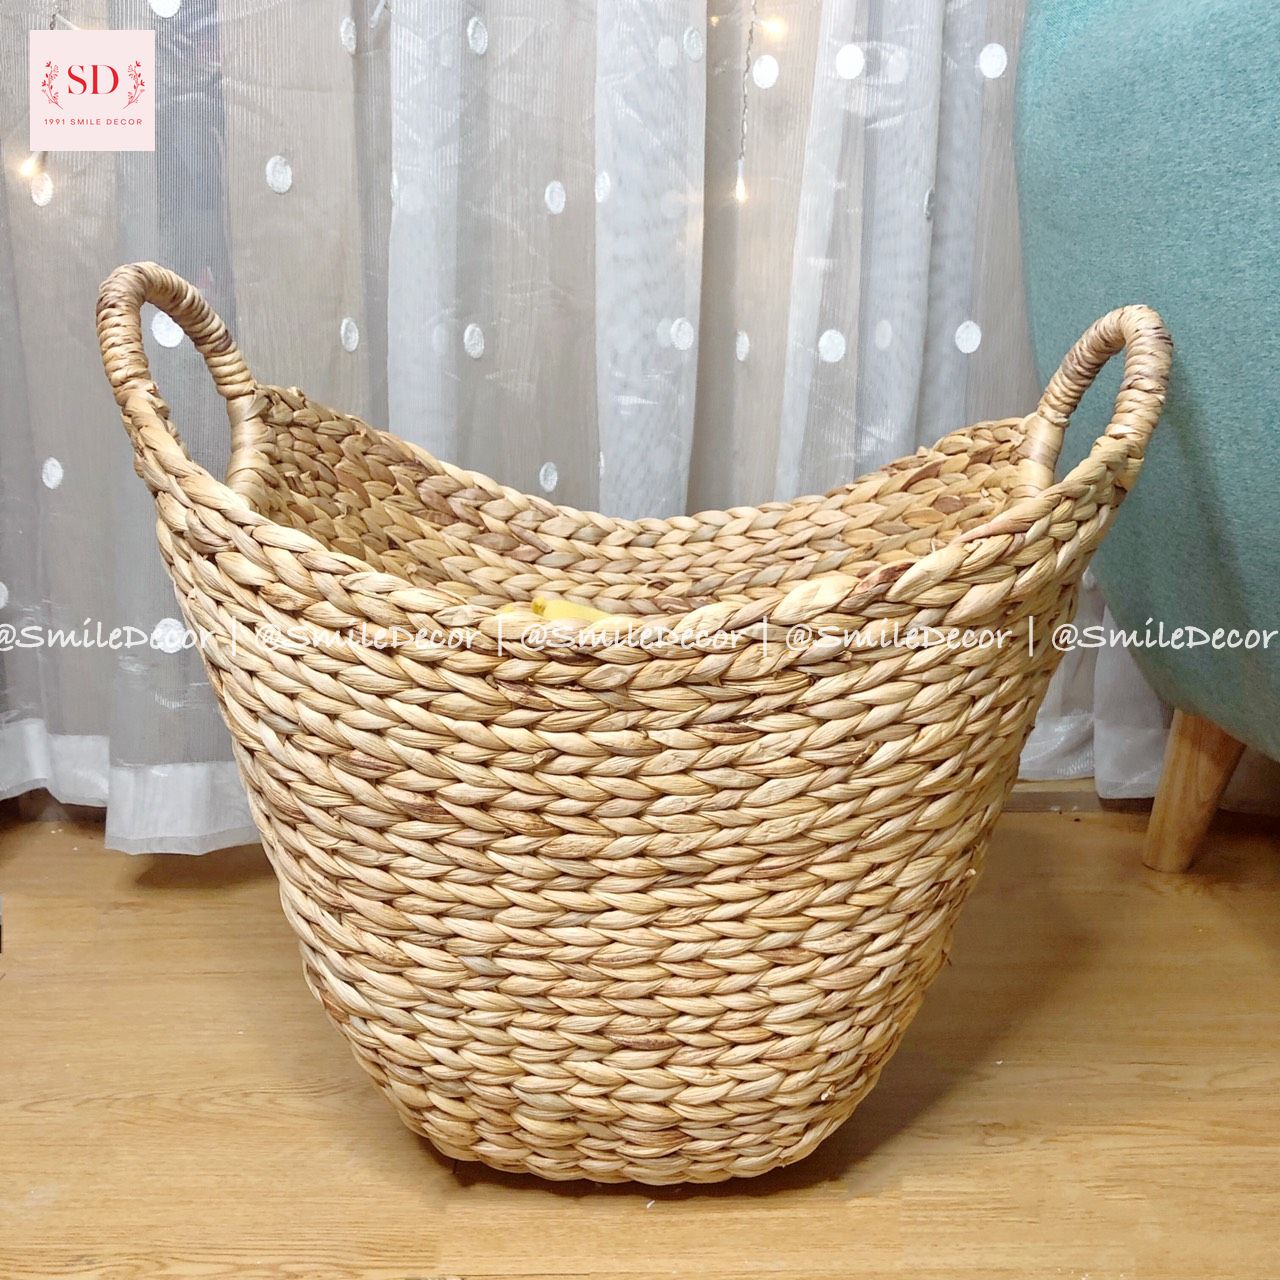 Sọt bèo tây (lục bình) đựng quần áo/ Hyacinth basket for clothing storage